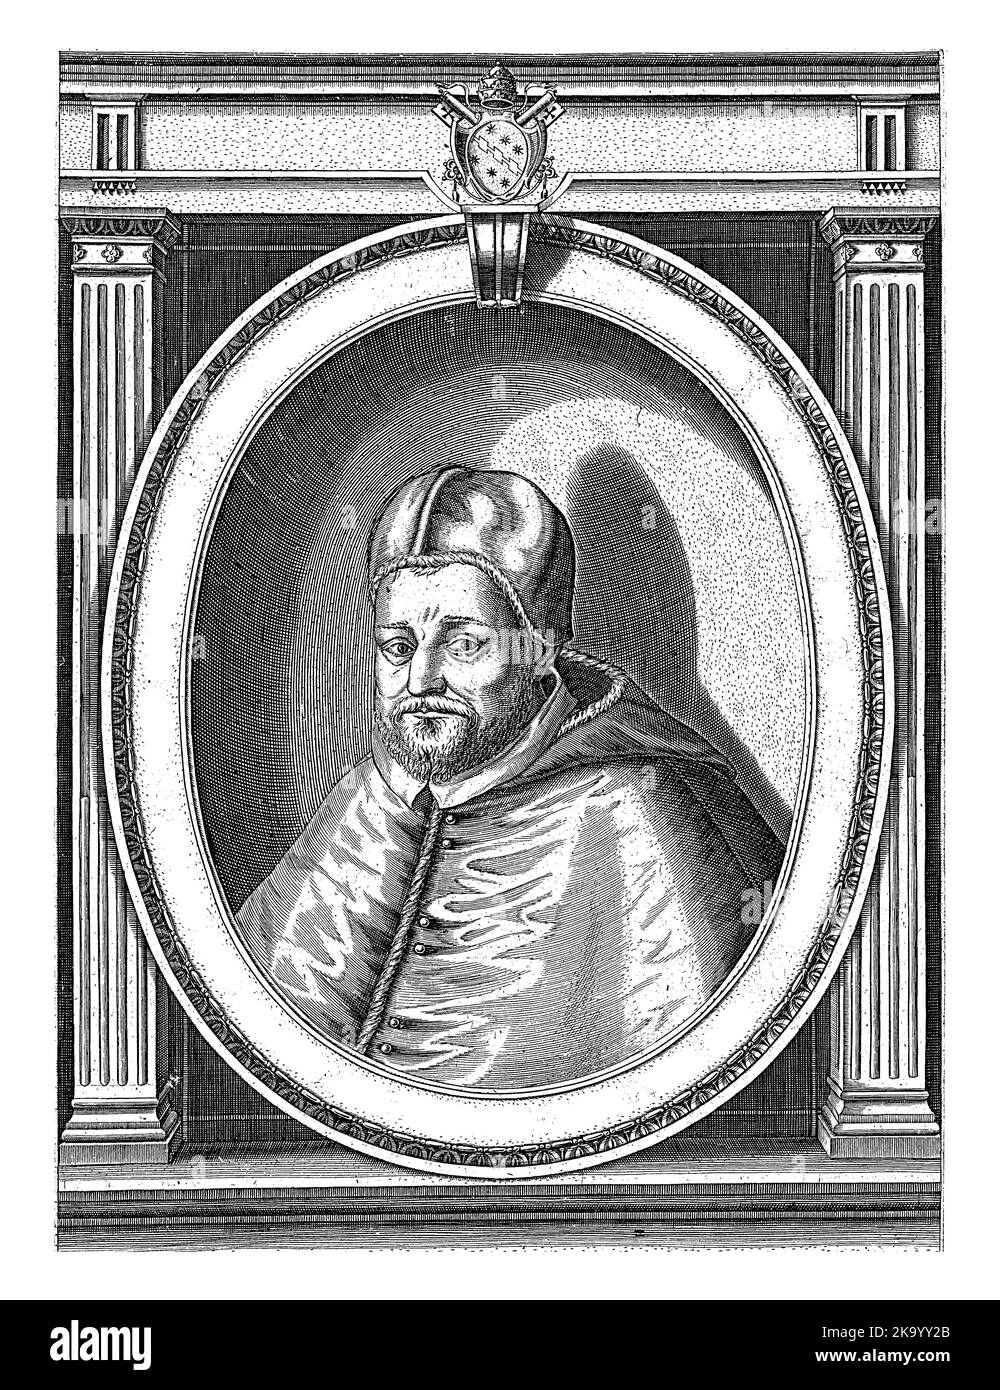 Ritratto di Papa Clemente VIII vestito con gli abiti papali, con un camauro sulla testa. Busto a sinistra in una cornice ovale con scritta sul bordo. Foto Stock